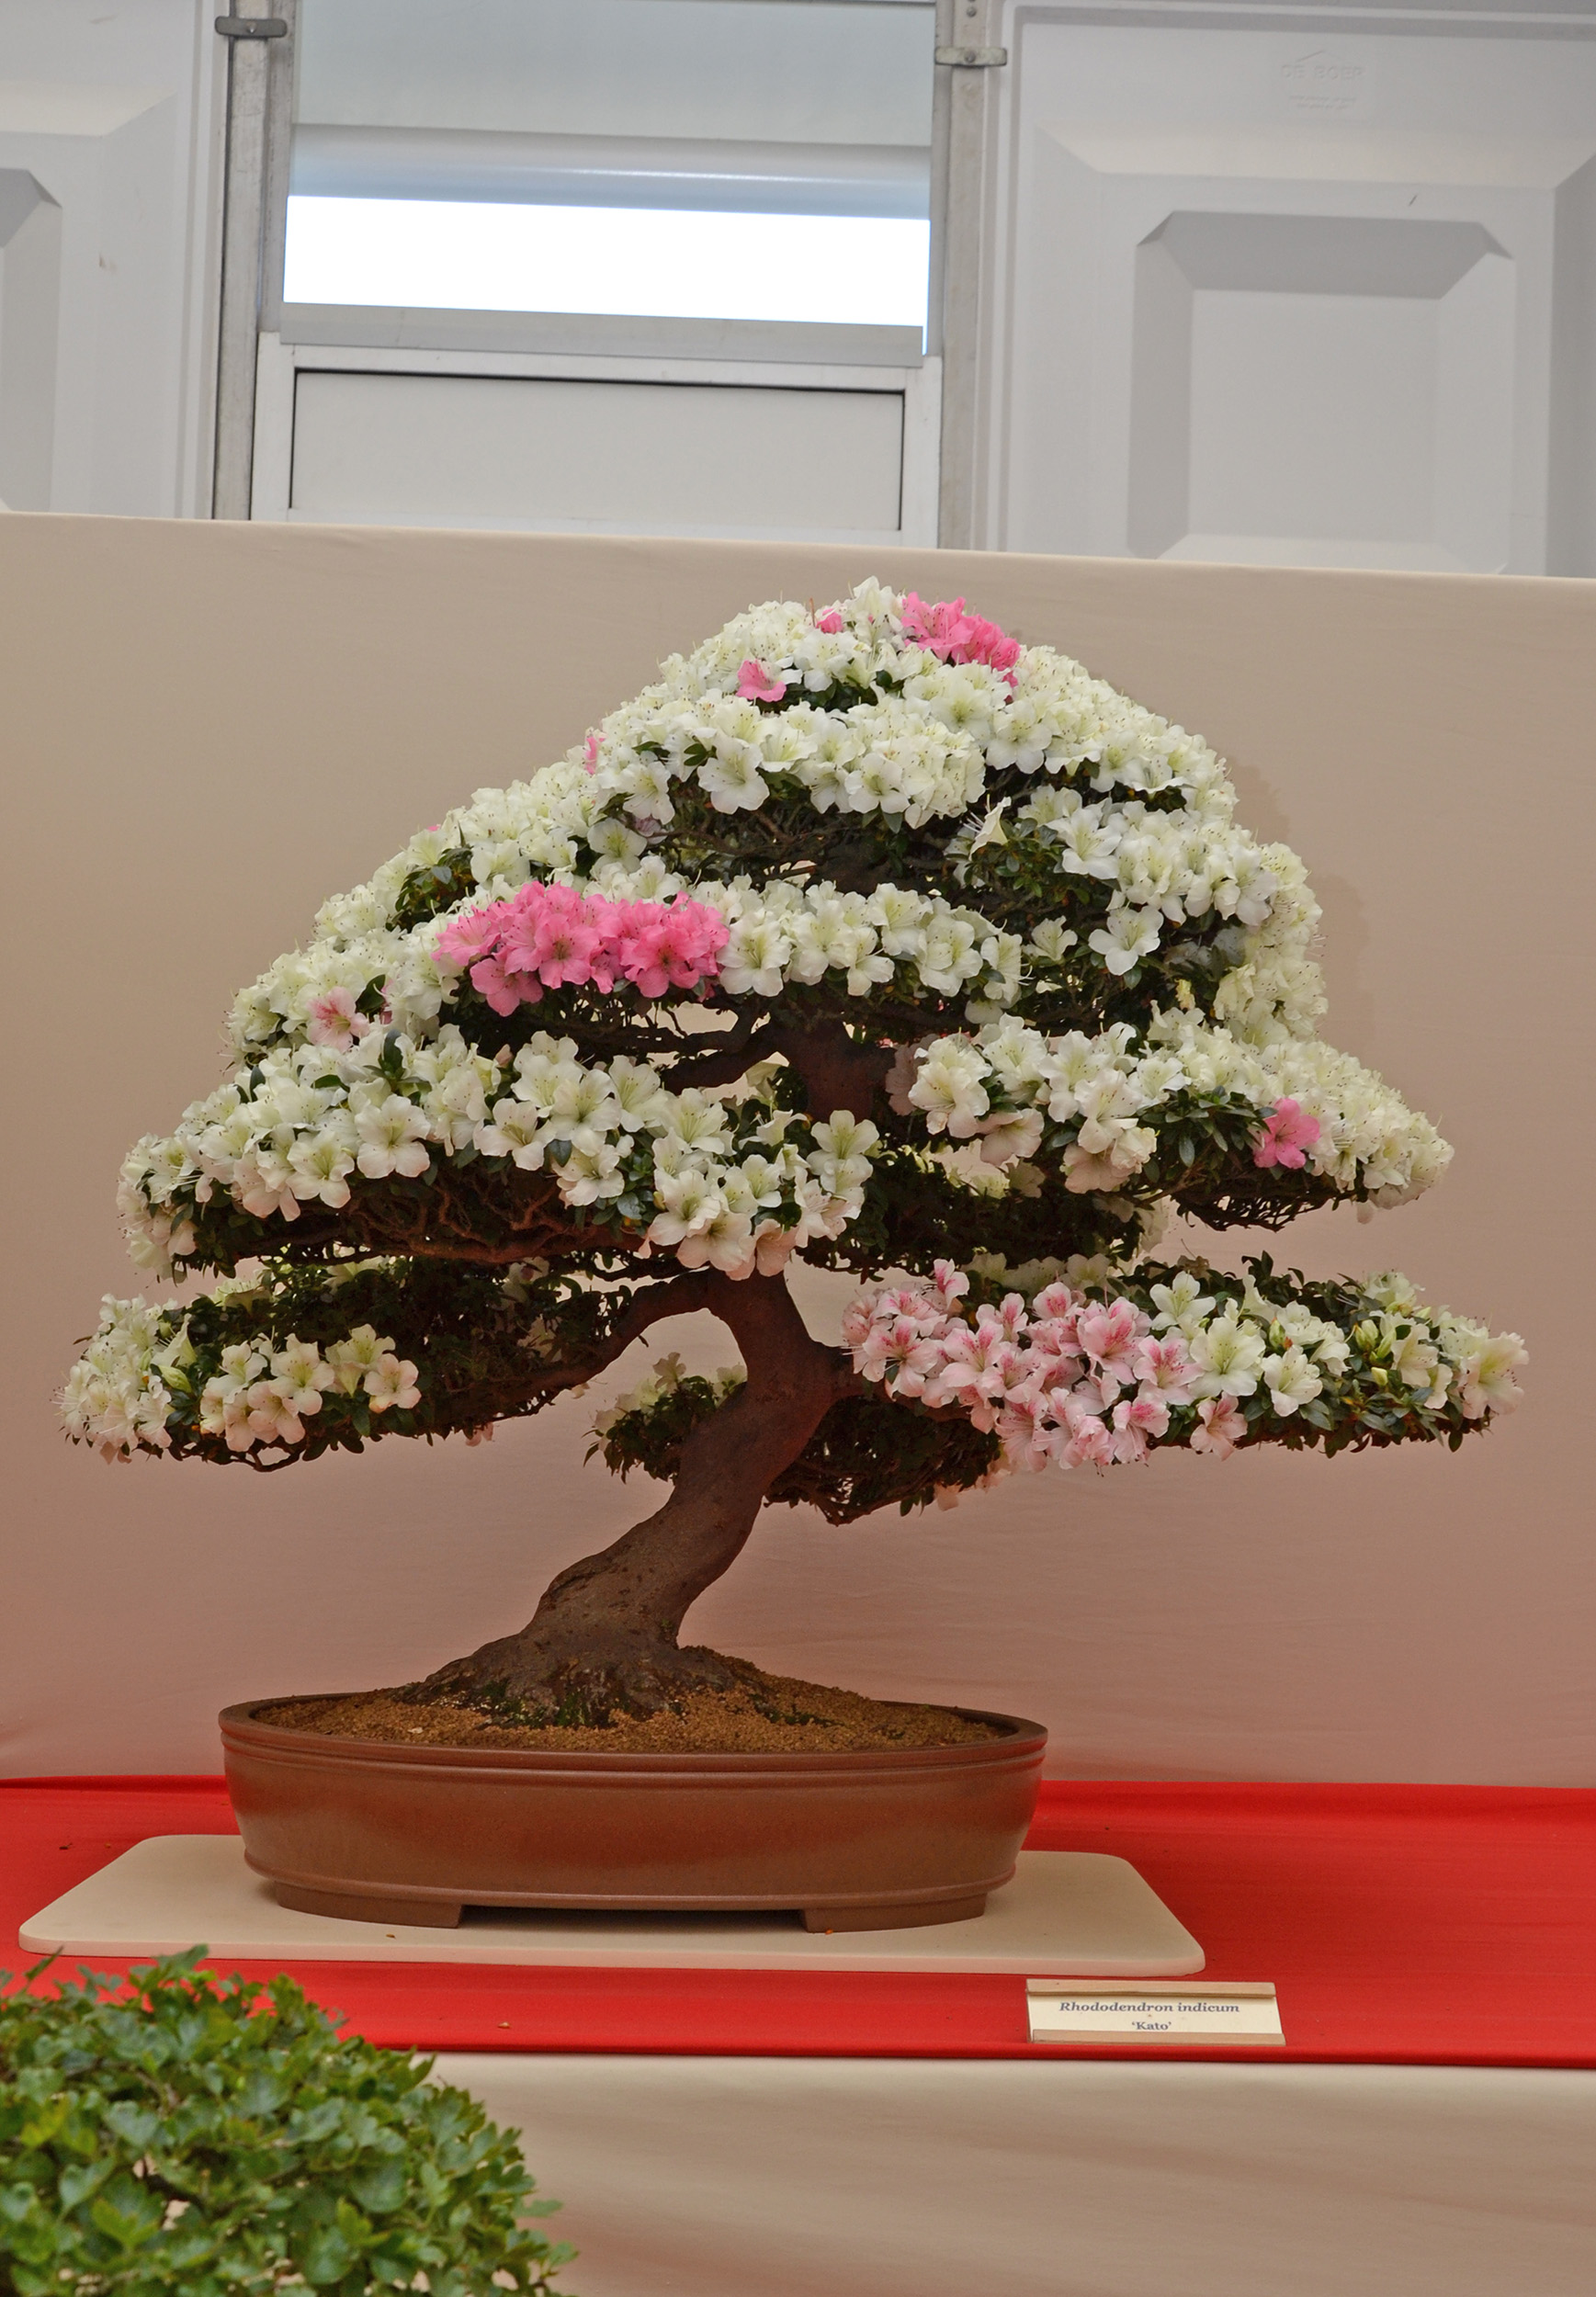 Rhododendron 'Kato' bonsai